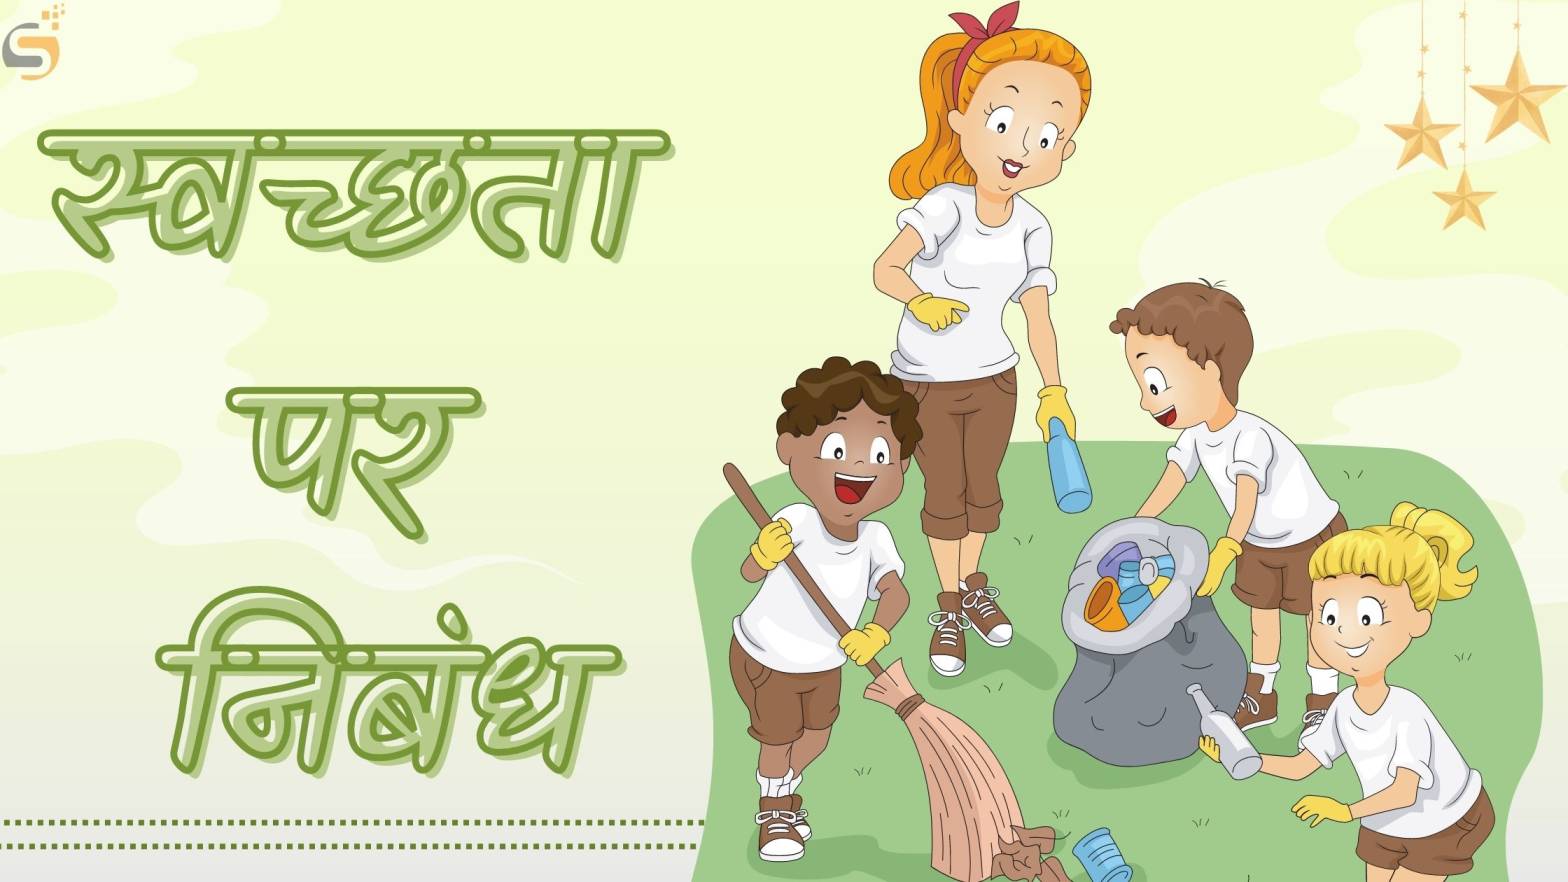 स्वच्छता पर निबंध - Essay on Swachata in Hindi